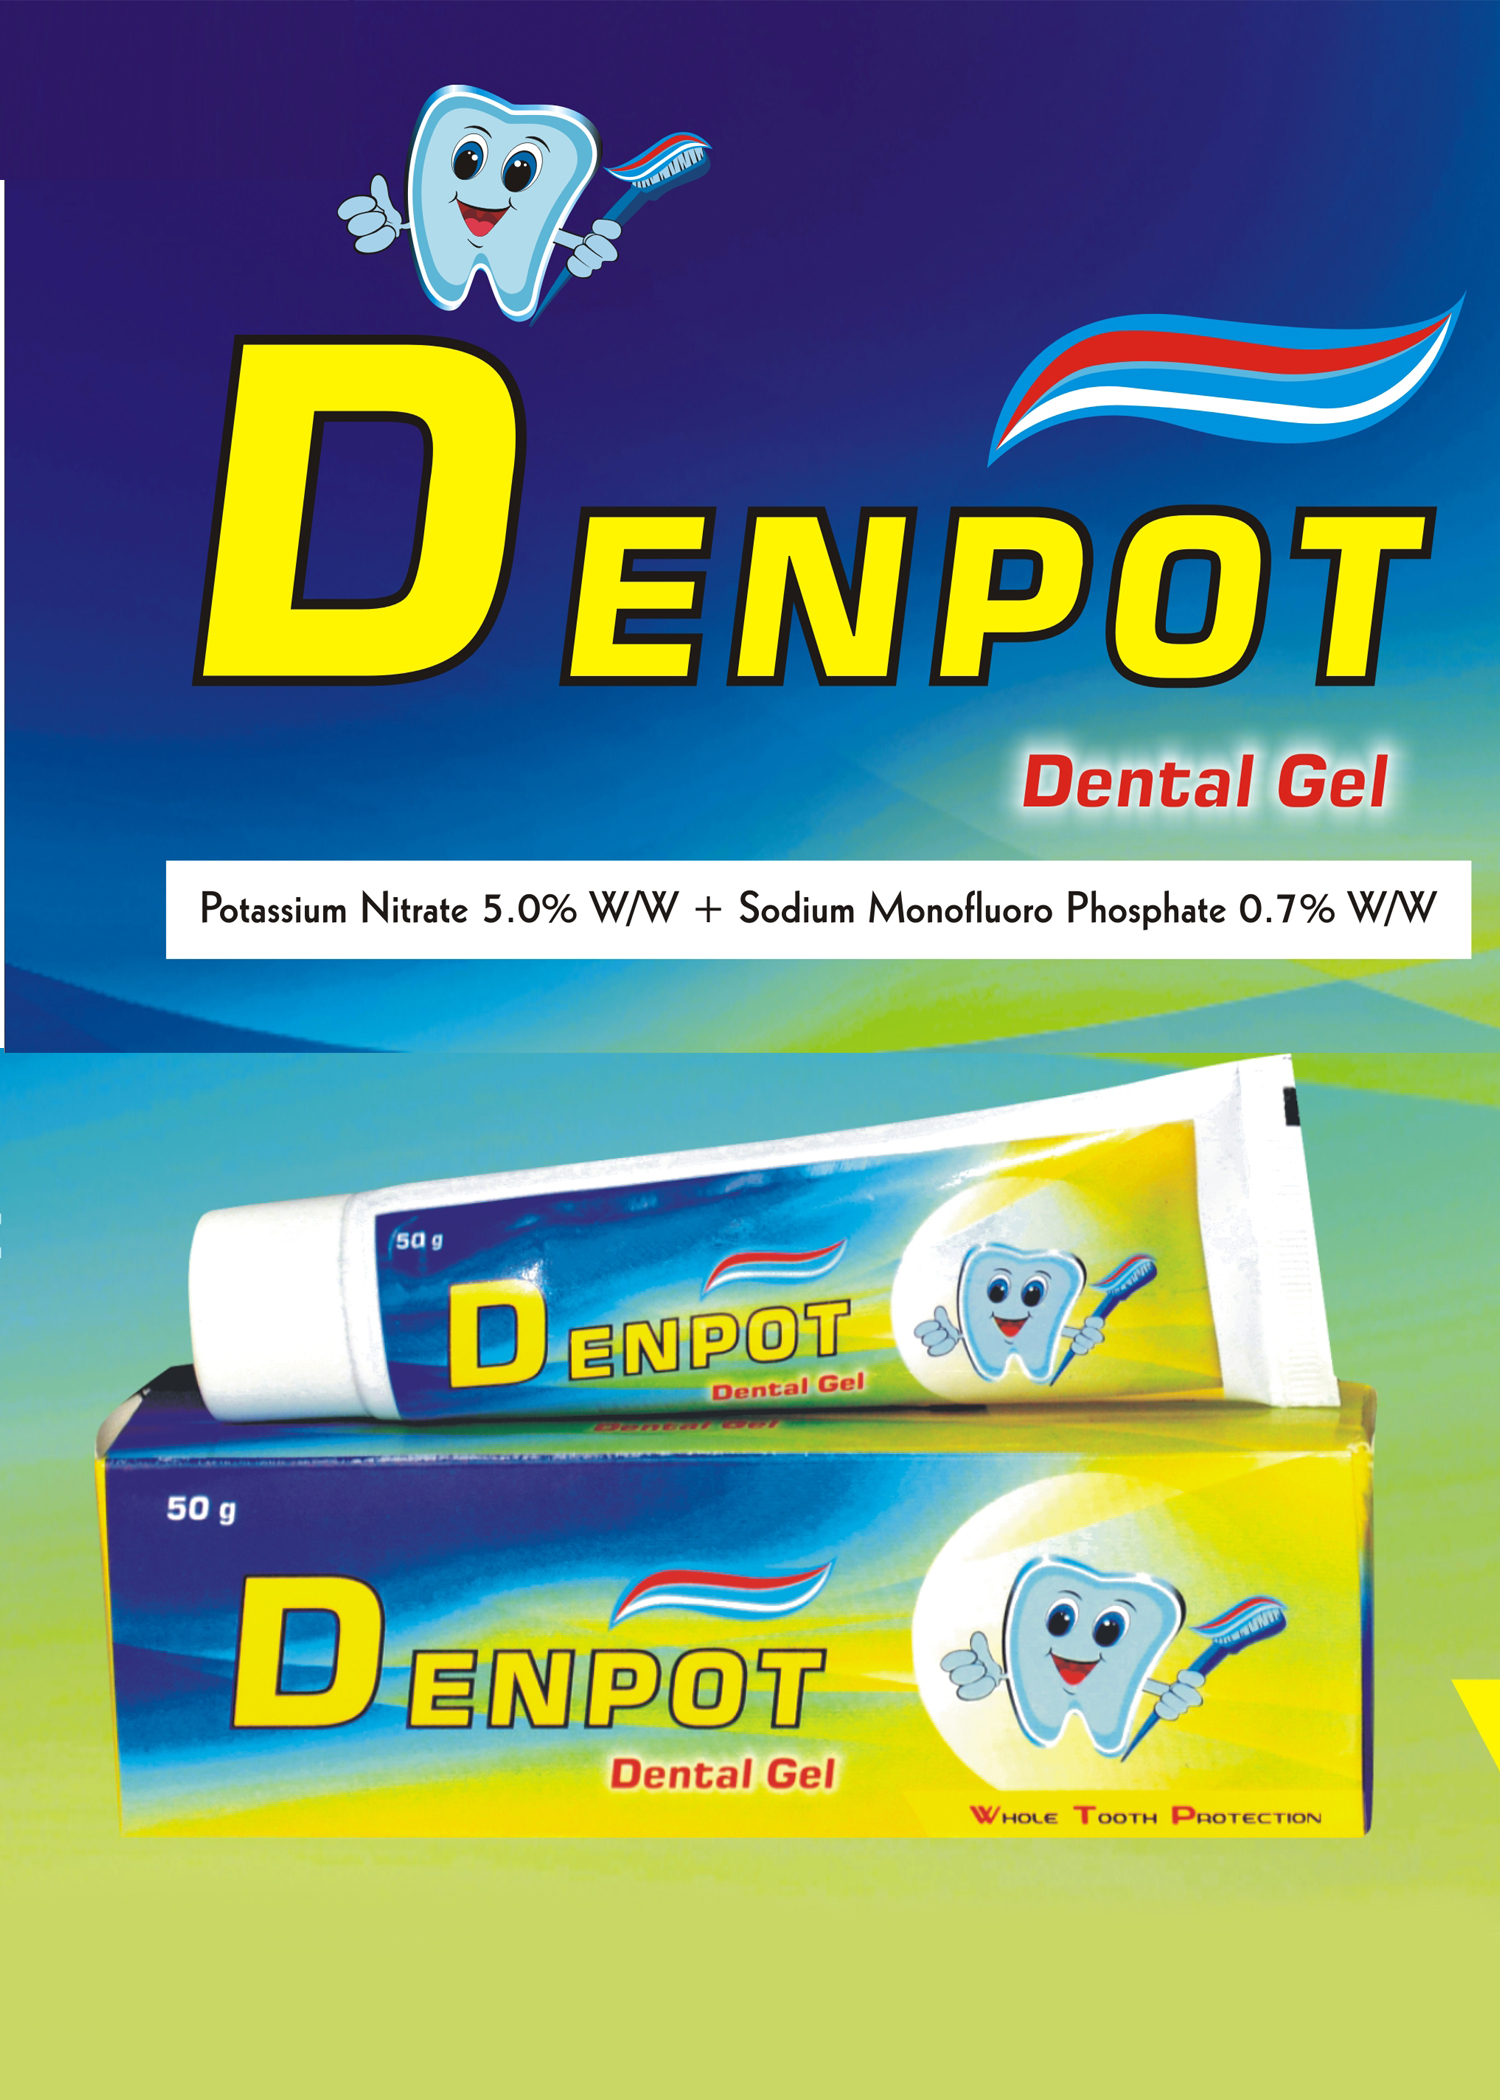 DENpot-F  ( Tooth Gel )